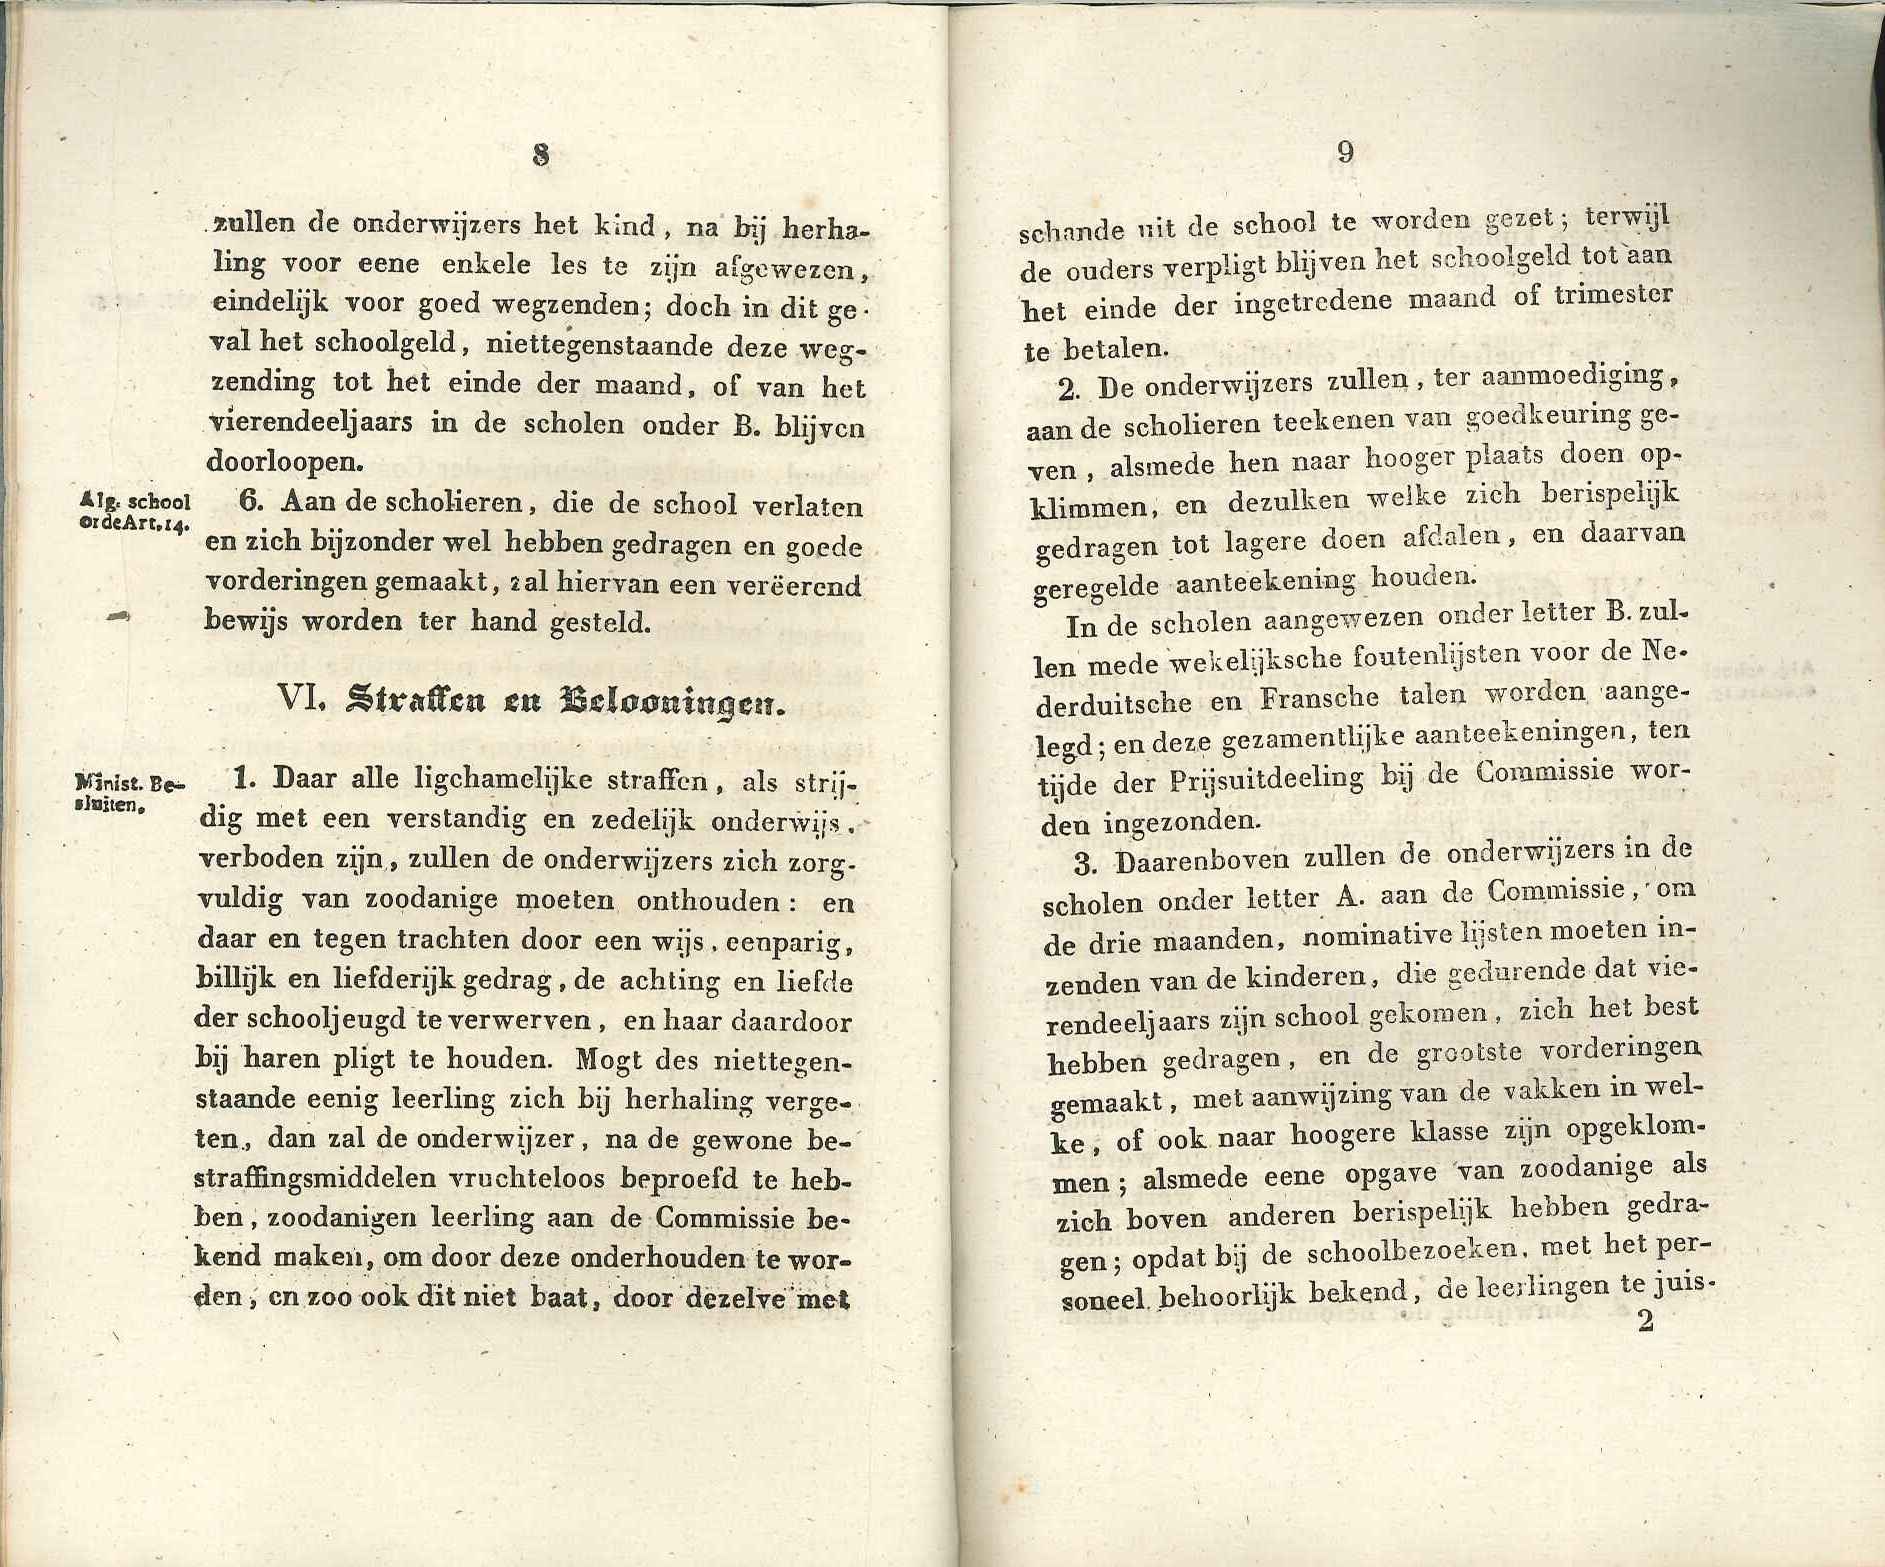 Fragment uit het reglement op de lagere scholen over het straffen van scholieren, 1837. GAG.ASG.inv.nr. 3286.